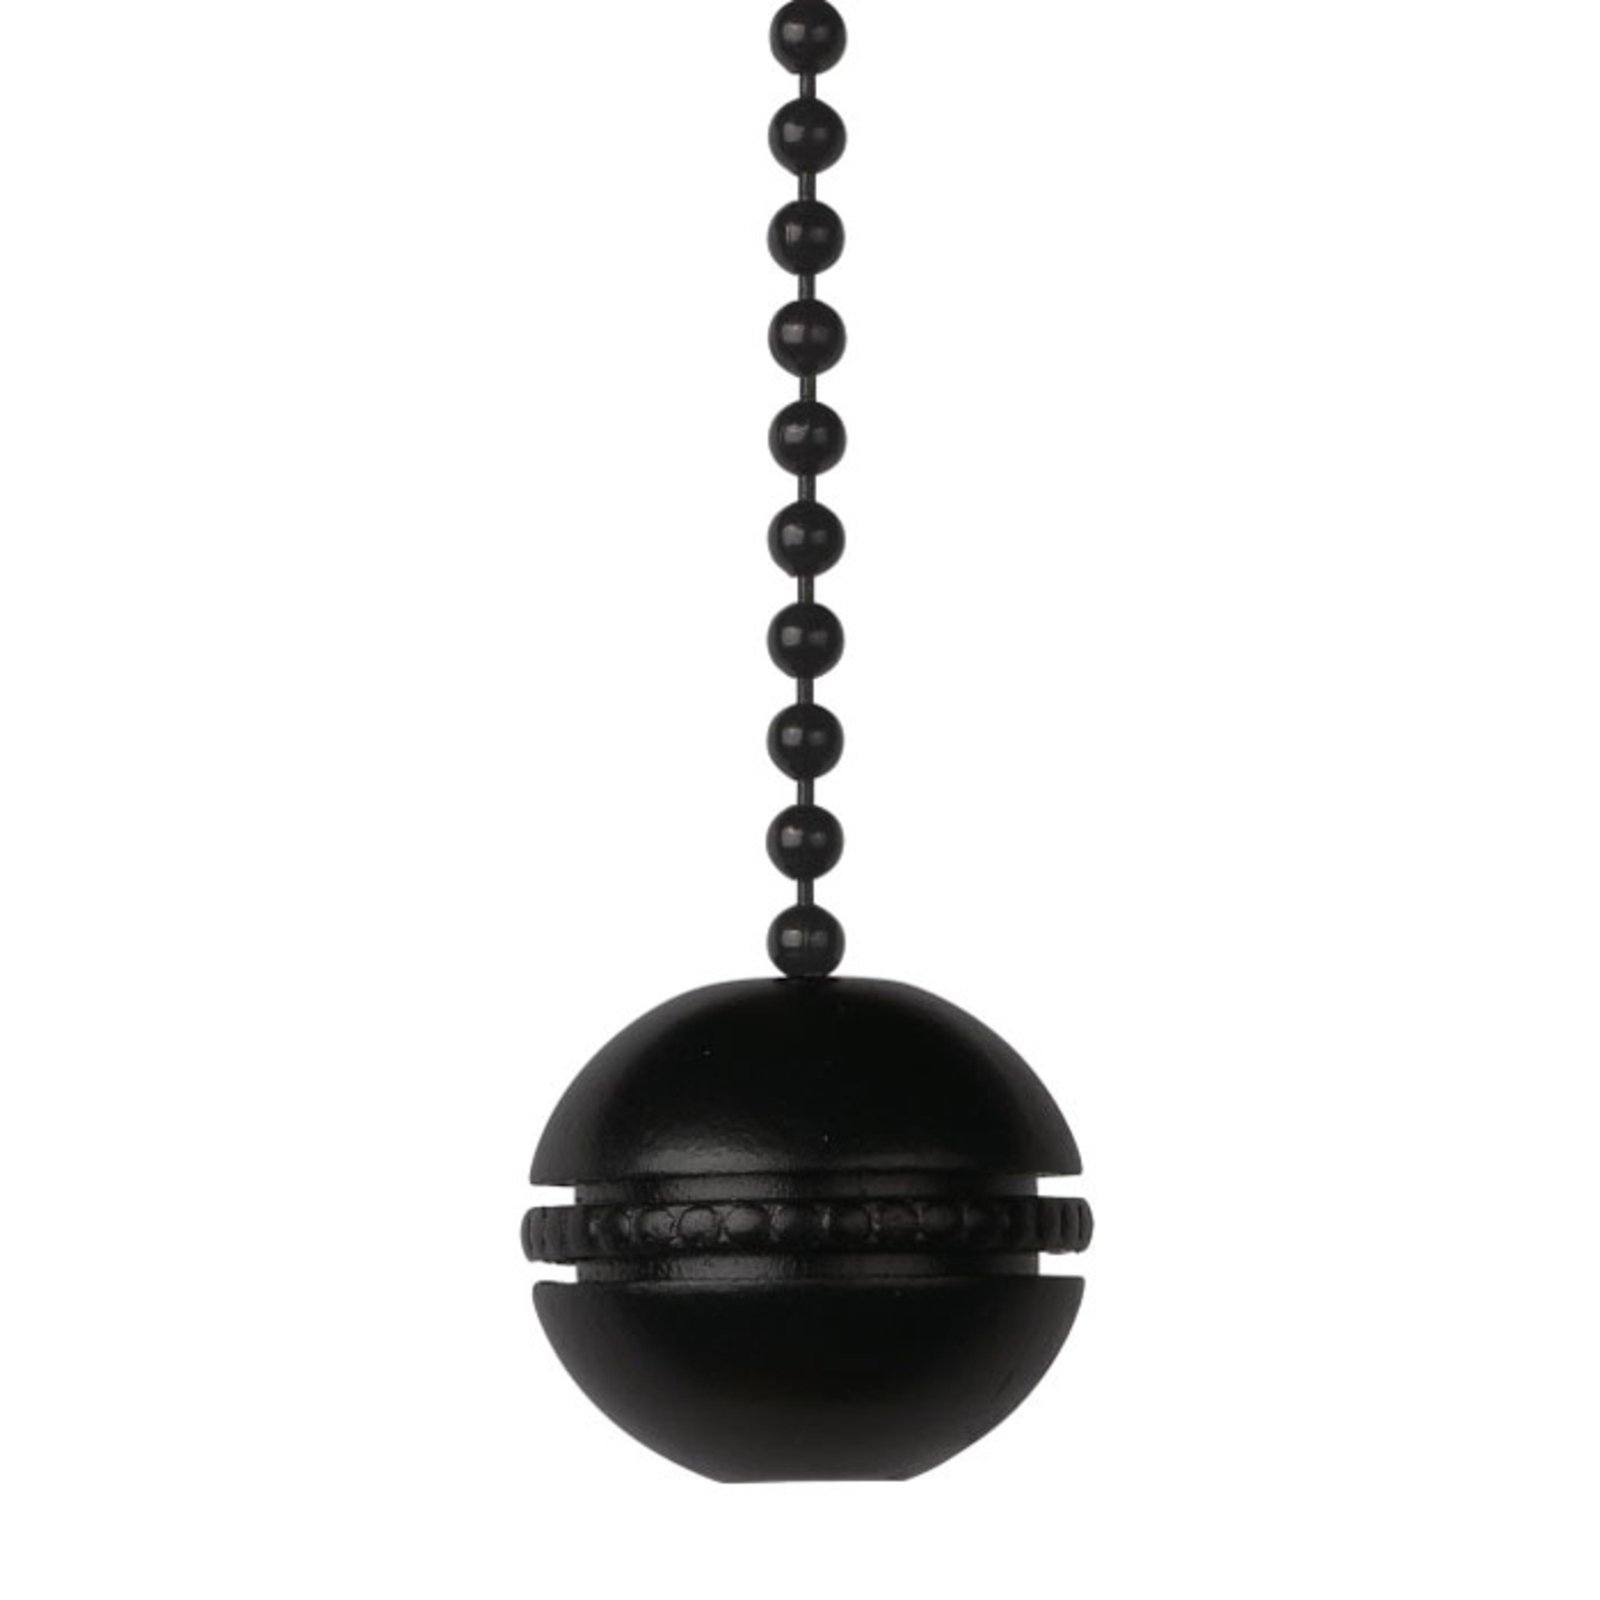 Westinghouse kula – kulkedja i svart